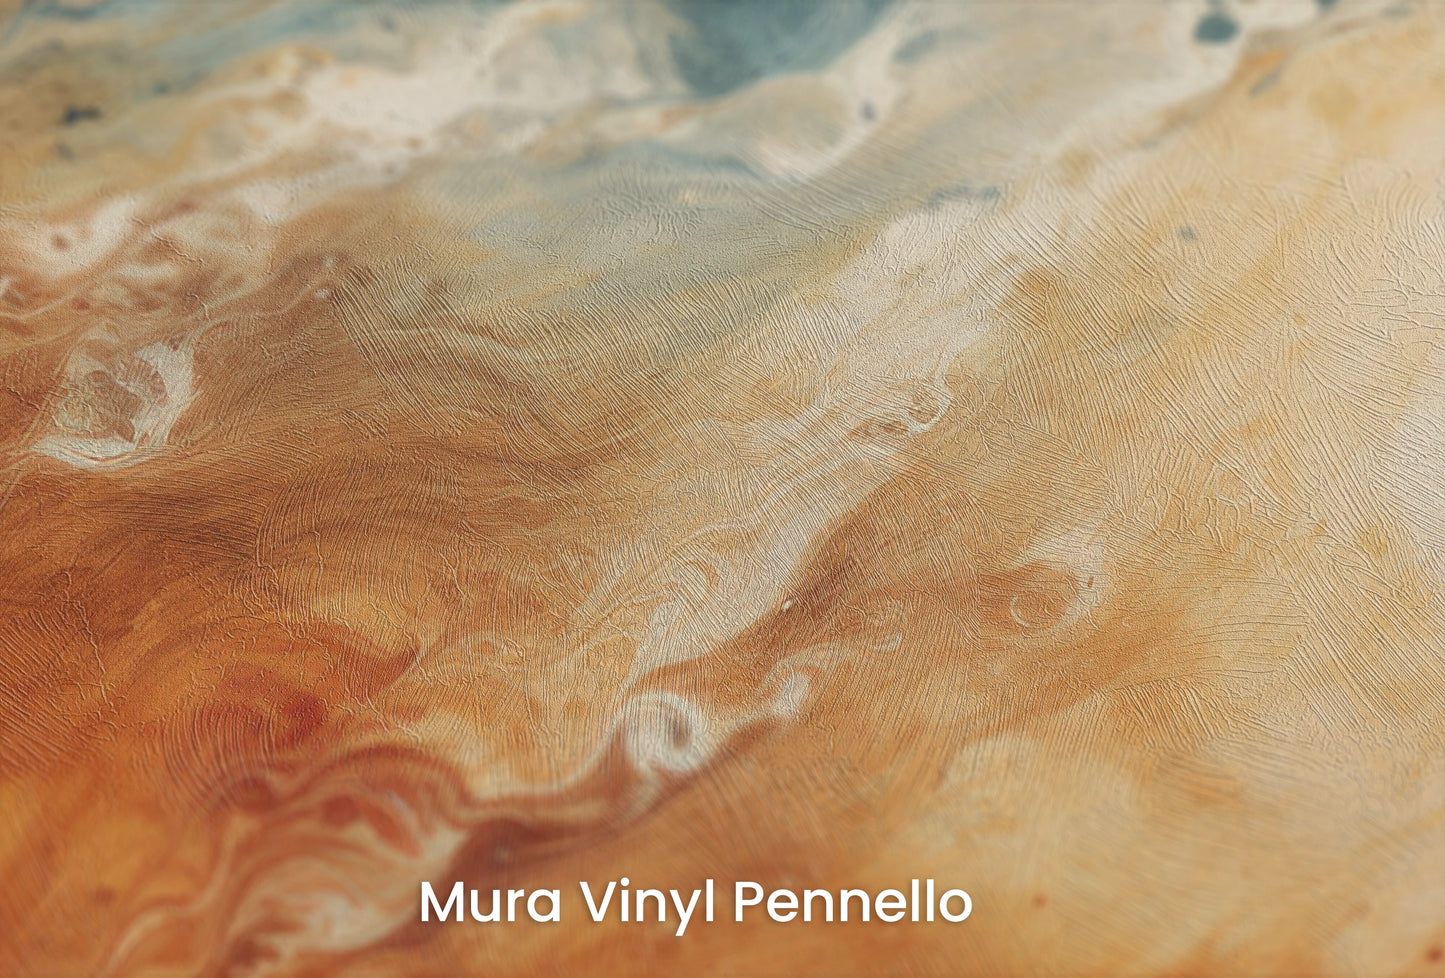 Zbliżenie na artystyczną fototapetę o nazwie Jovian Storm na podłożu Mura Vinyl Pennello - faktura pociągnięć pędzla malarskiego.